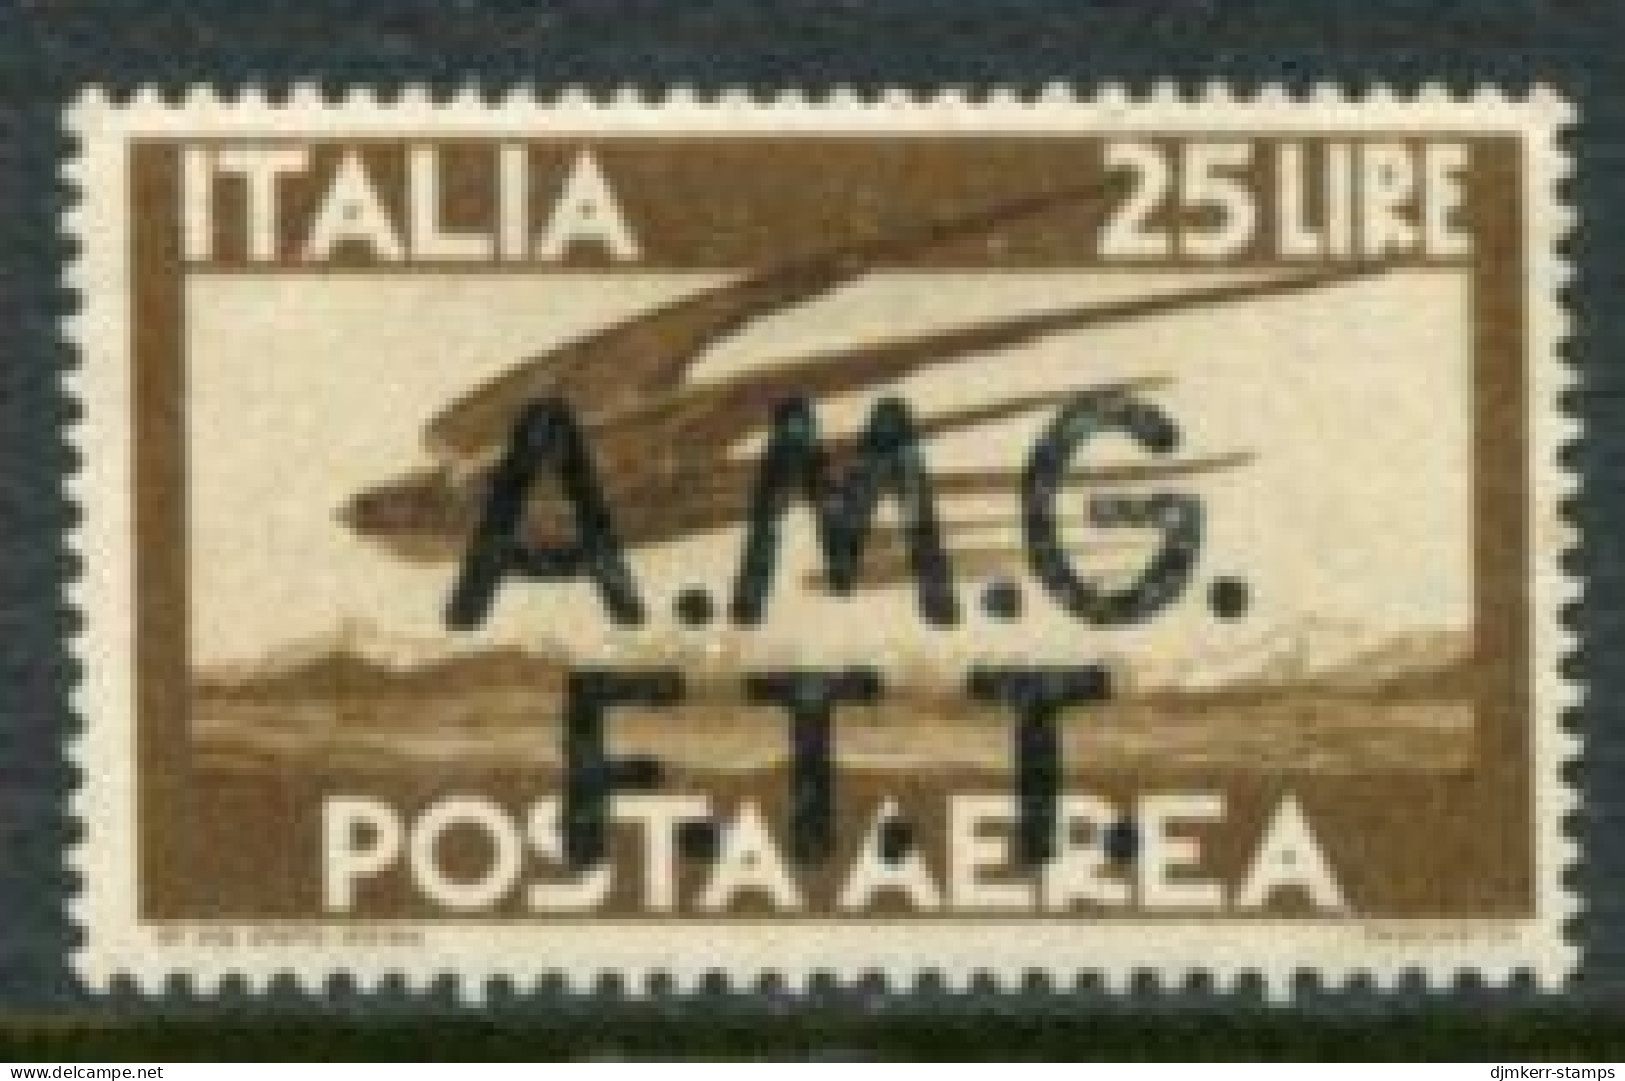 TRIESTE ZONE A 1947 Airmail 25 L. MNH / **  Michel 22 - Neufs